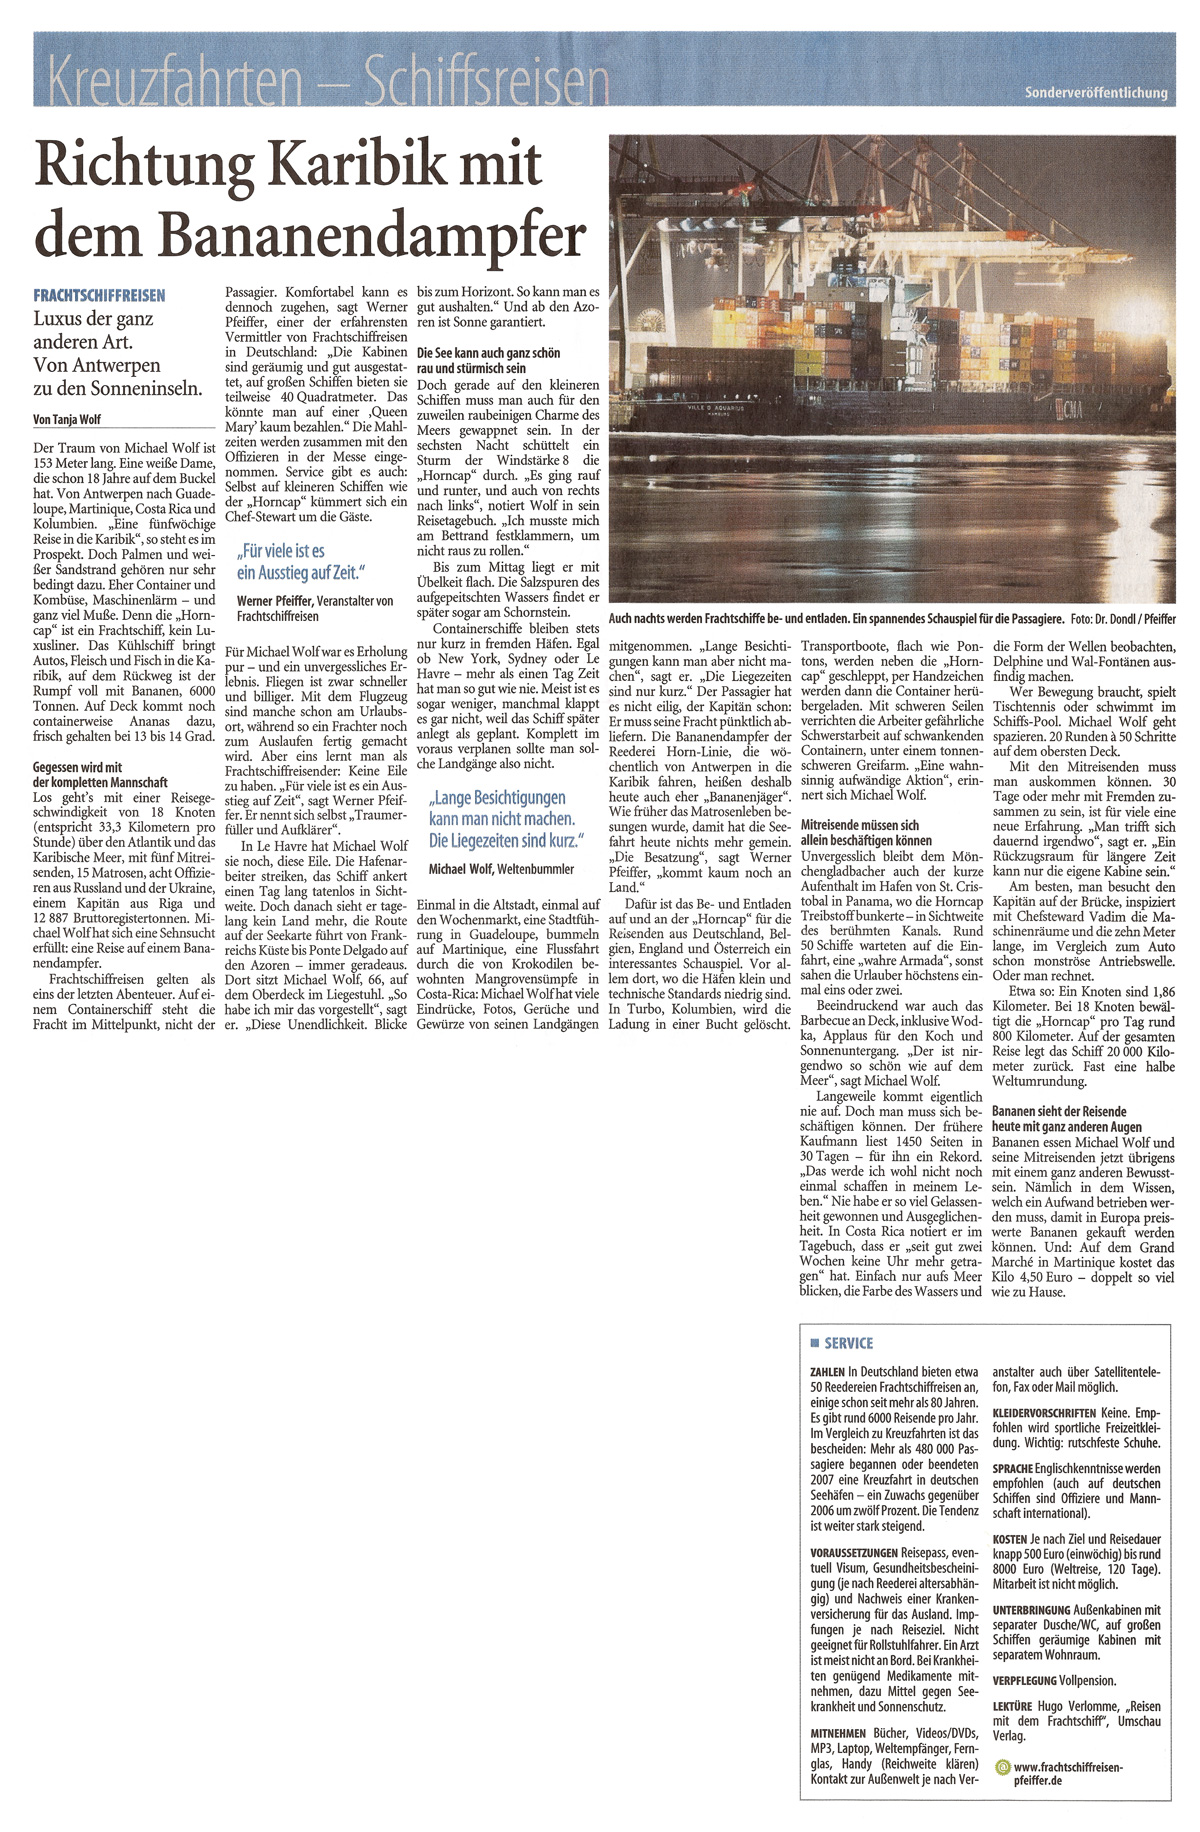 International Freighter Voyages Pfeiffer - Press Reports - Westdeutsche Zeitung 31.01.2009